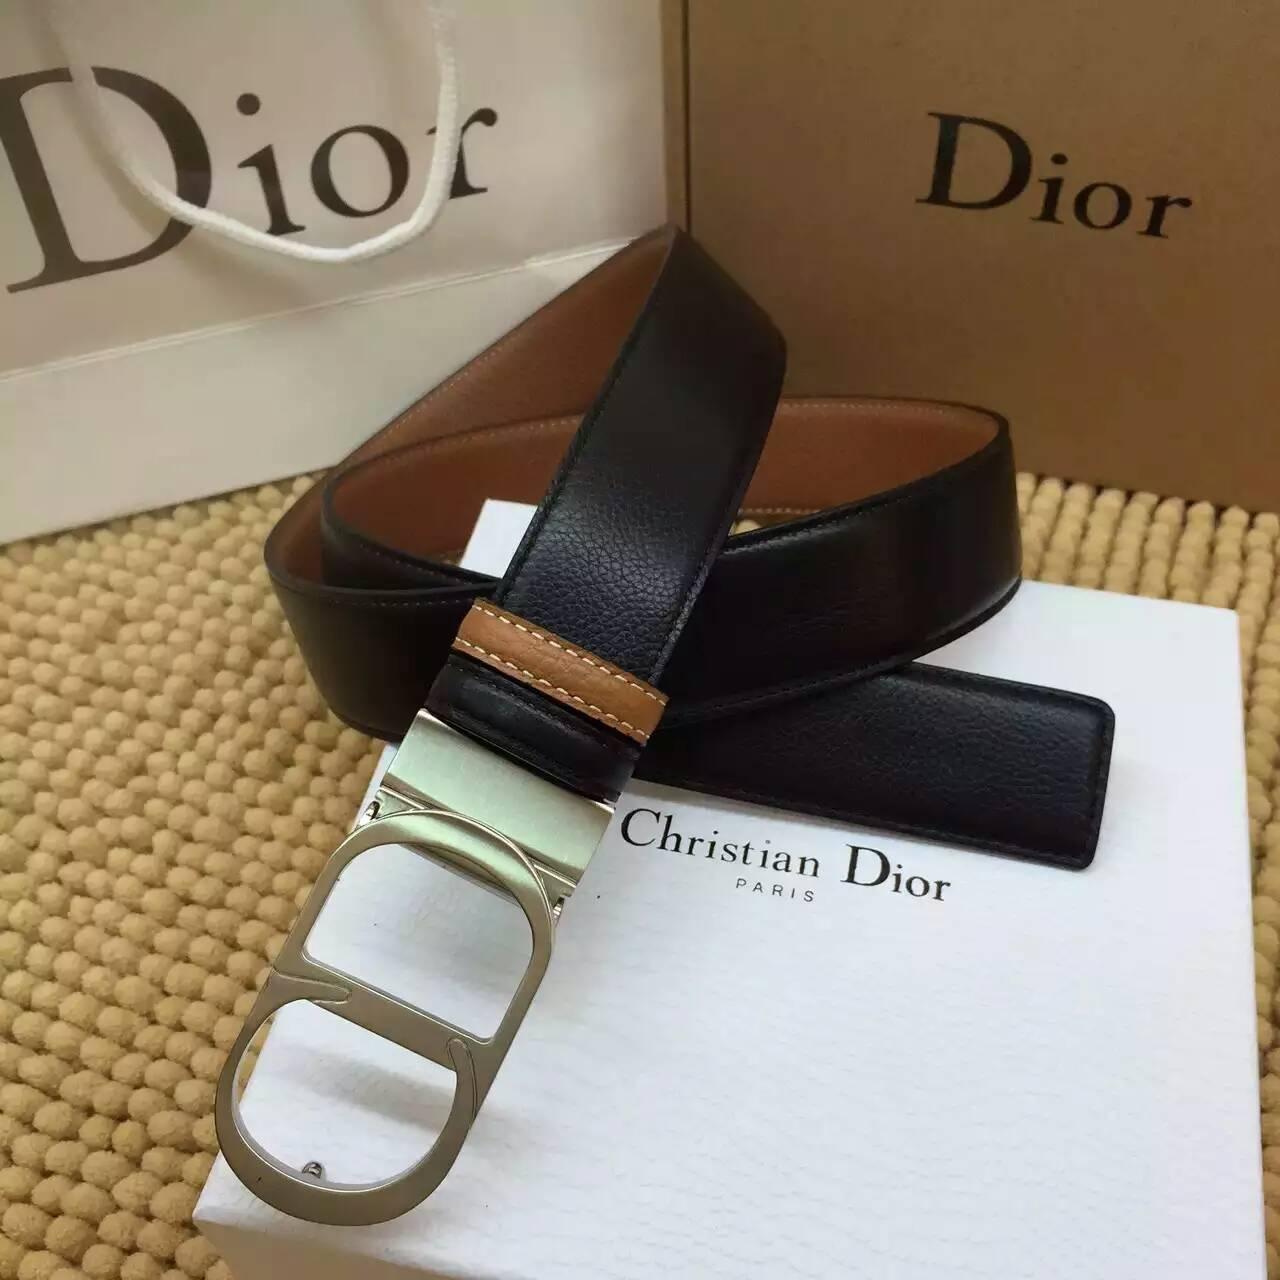 ディオールコピー ベルト Christian Dior 2016春夏新作 高品質 メンズ ベルト diorbelt160320-4